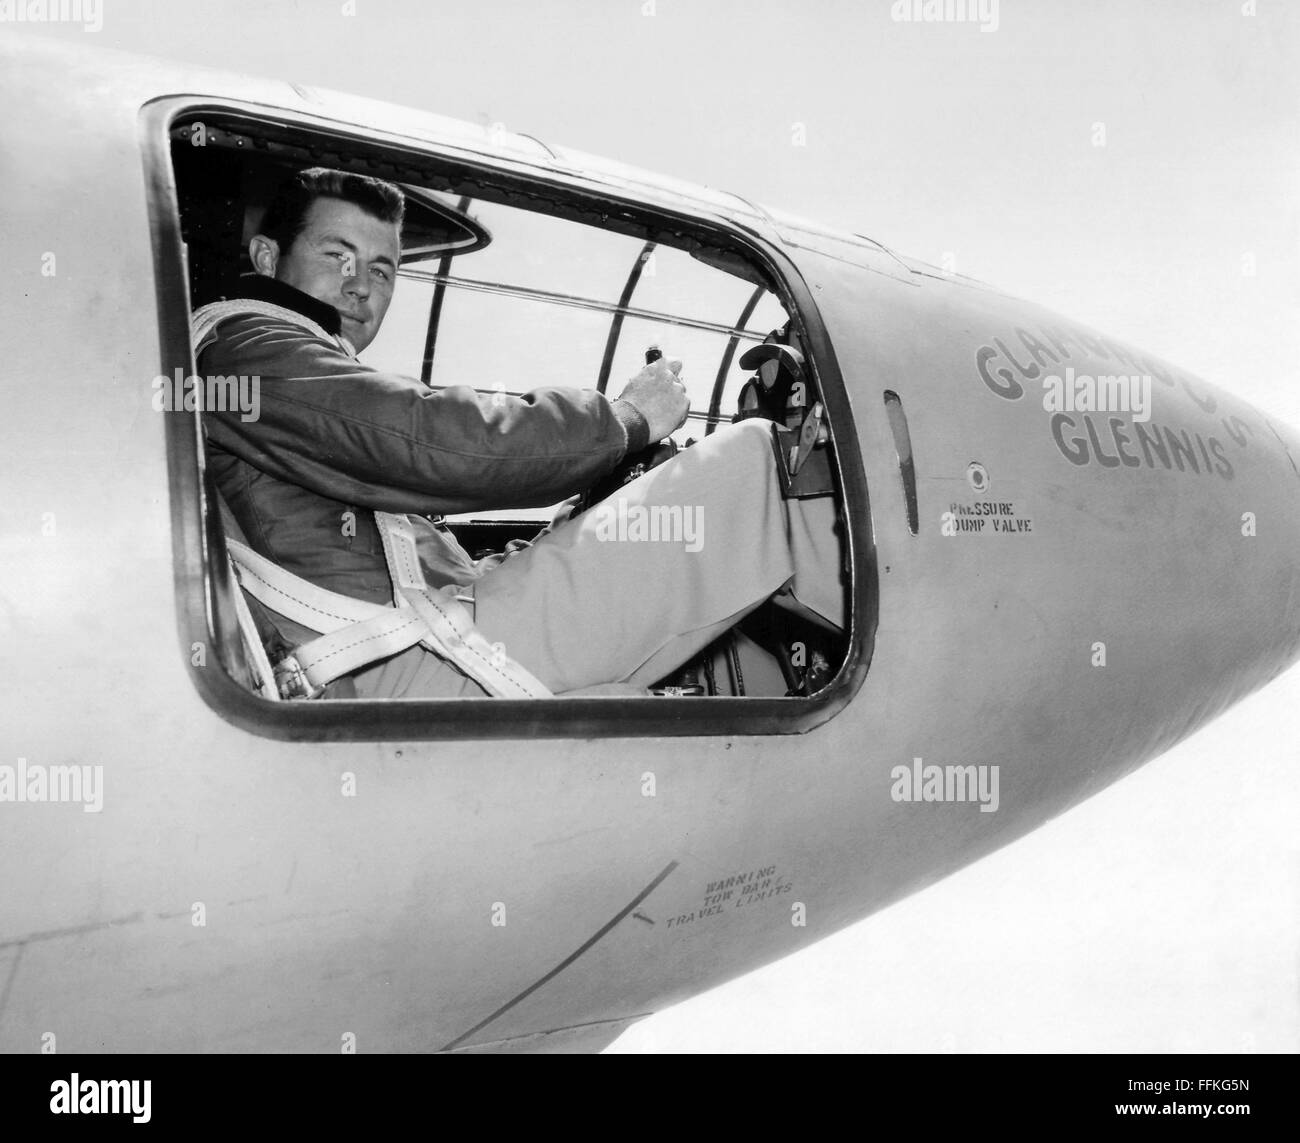 Chuck Yeager. US Air Force pilota Chuck Yeager nel pozzetto del Bell X-1 'Glamorous Glennis' in cui egli ha rotto la barriera del suono. Foto c.1947 dalla USAF Foto Stock